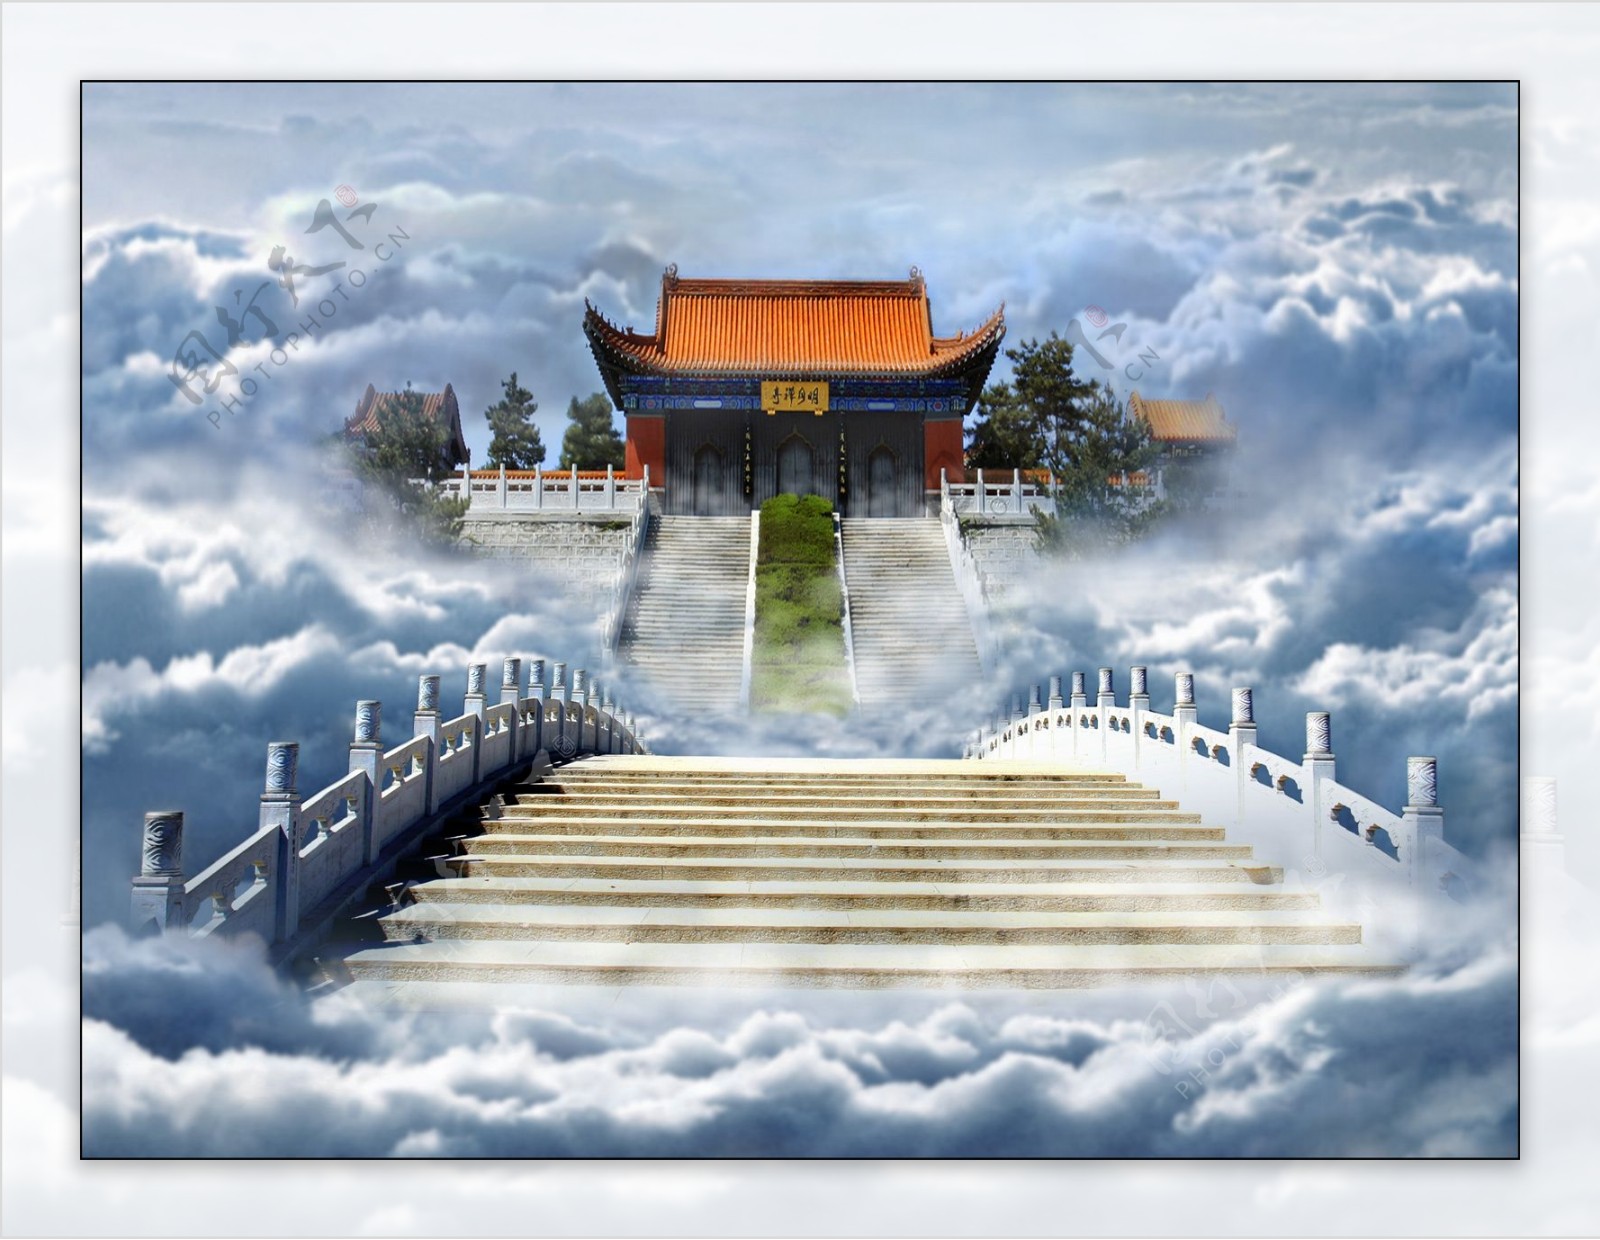 云雾中的禅寺